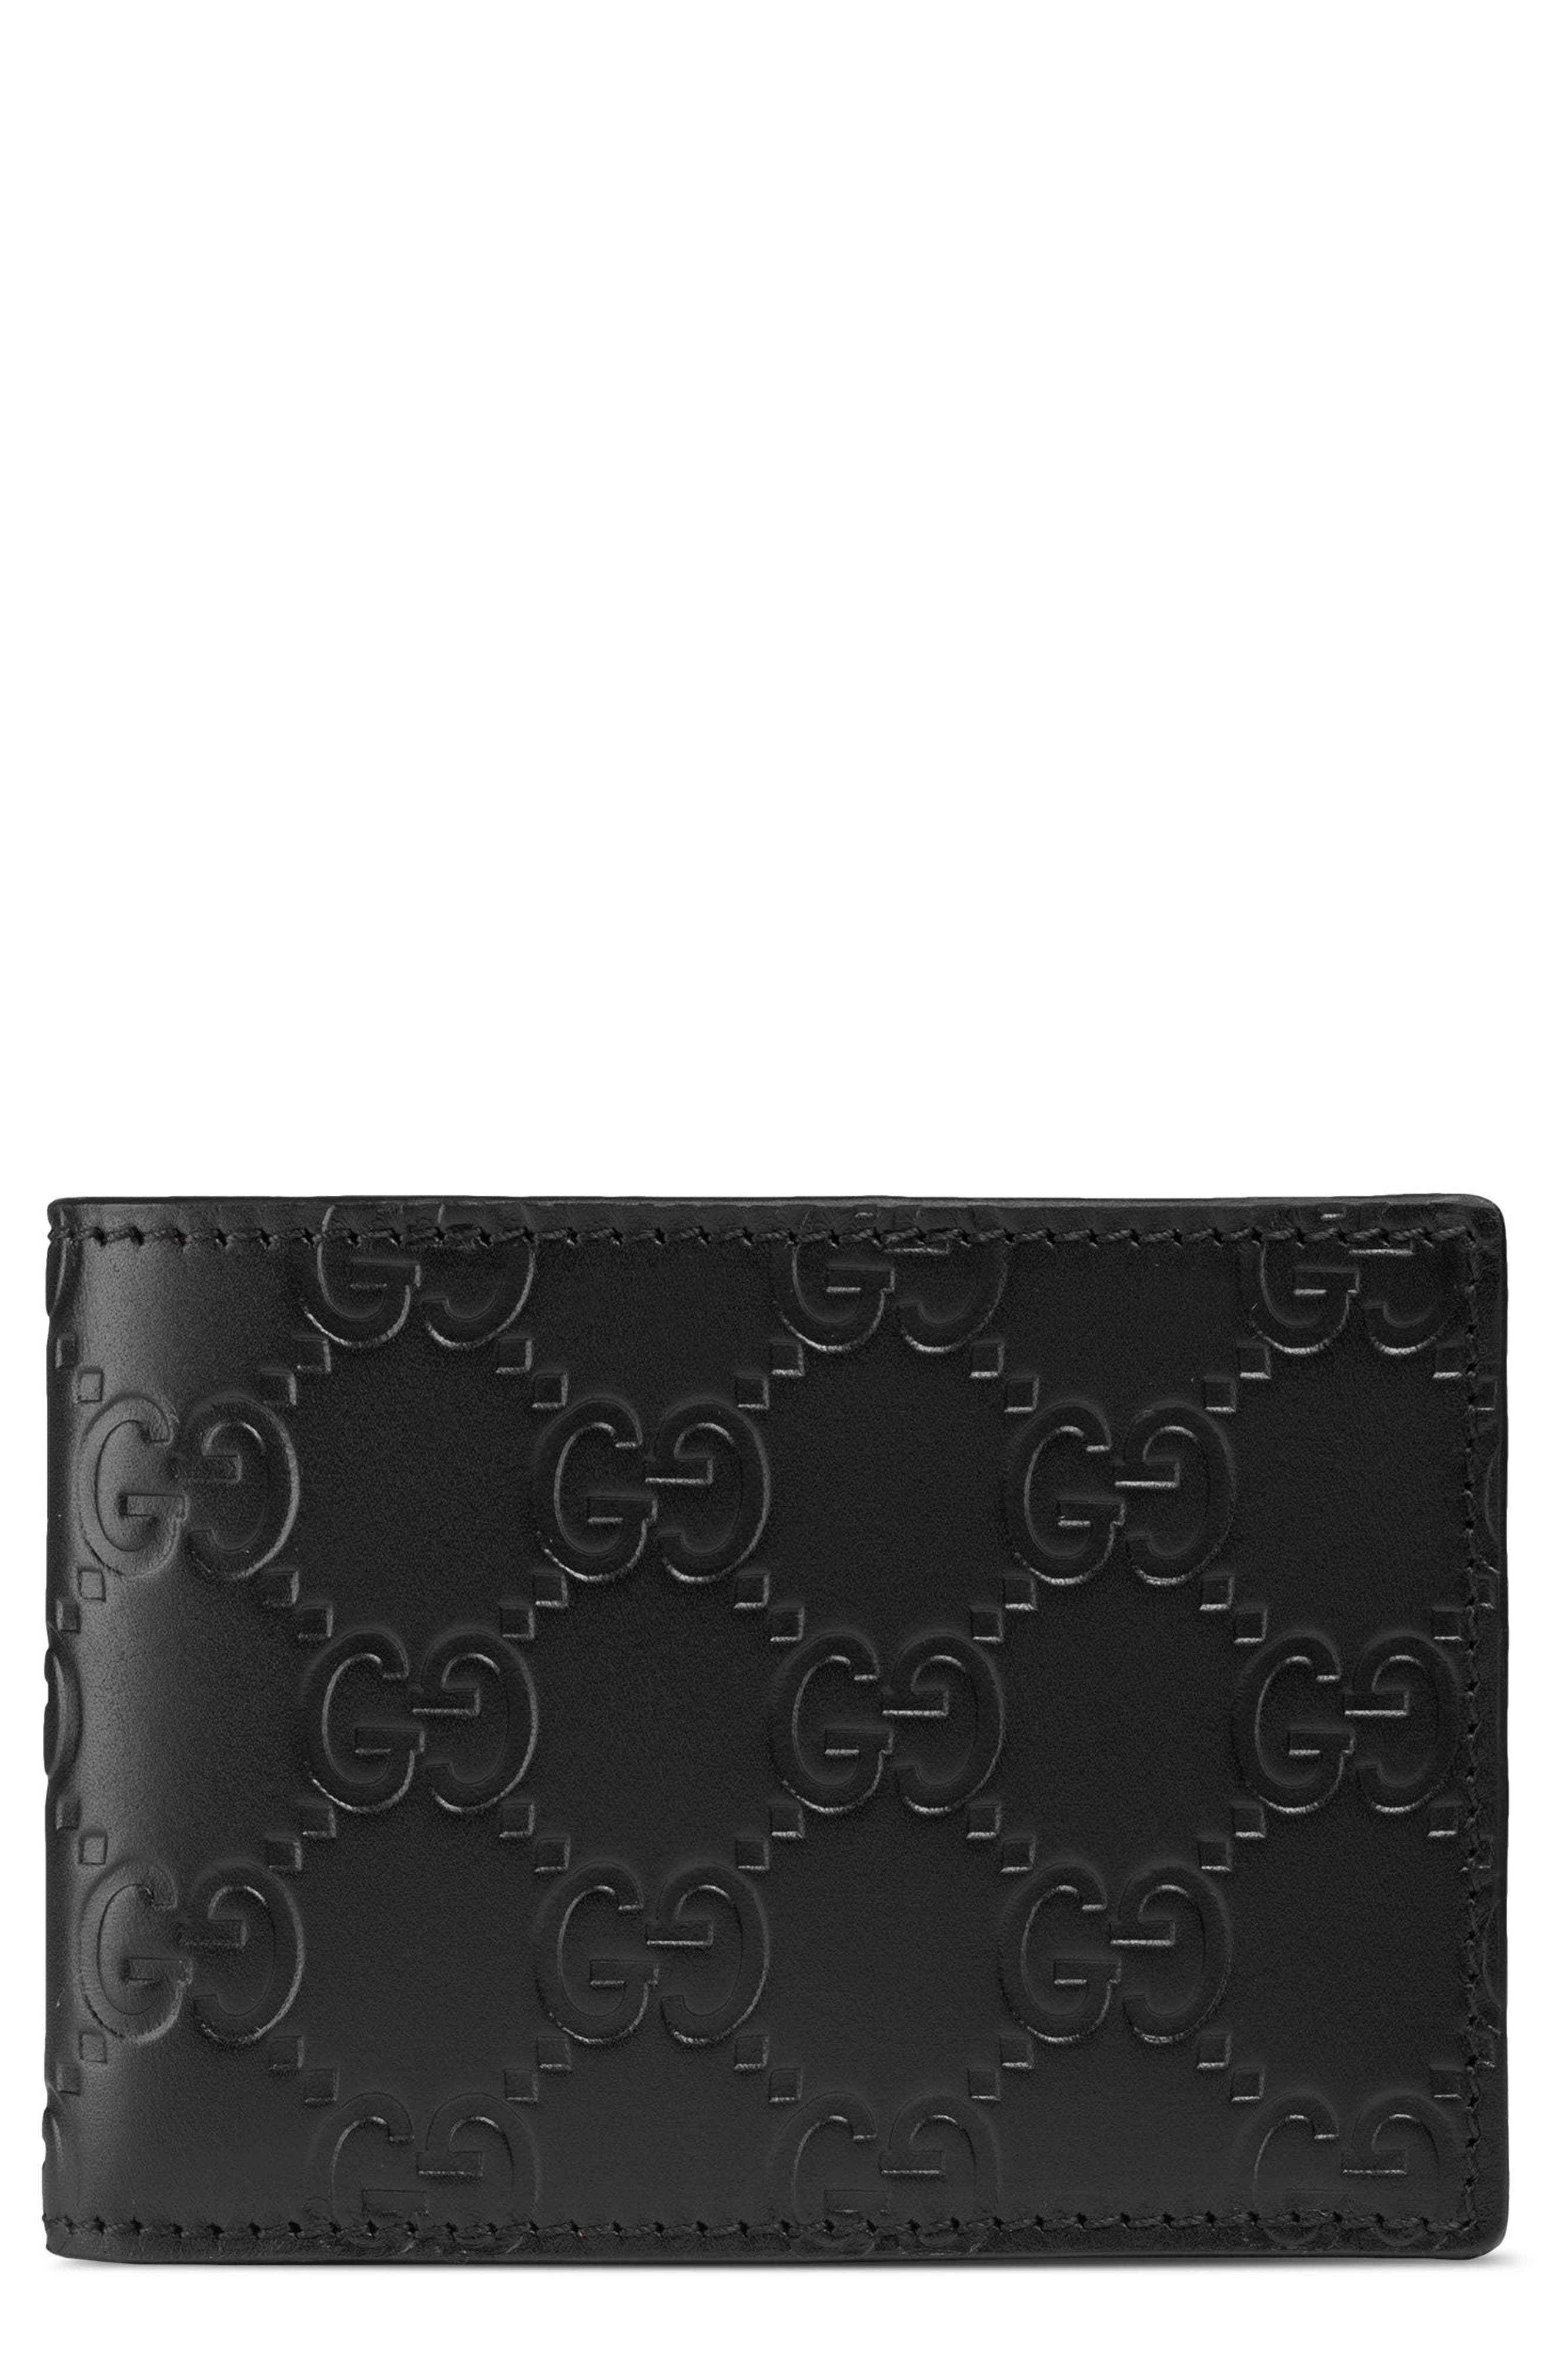 black gucci wallet for men